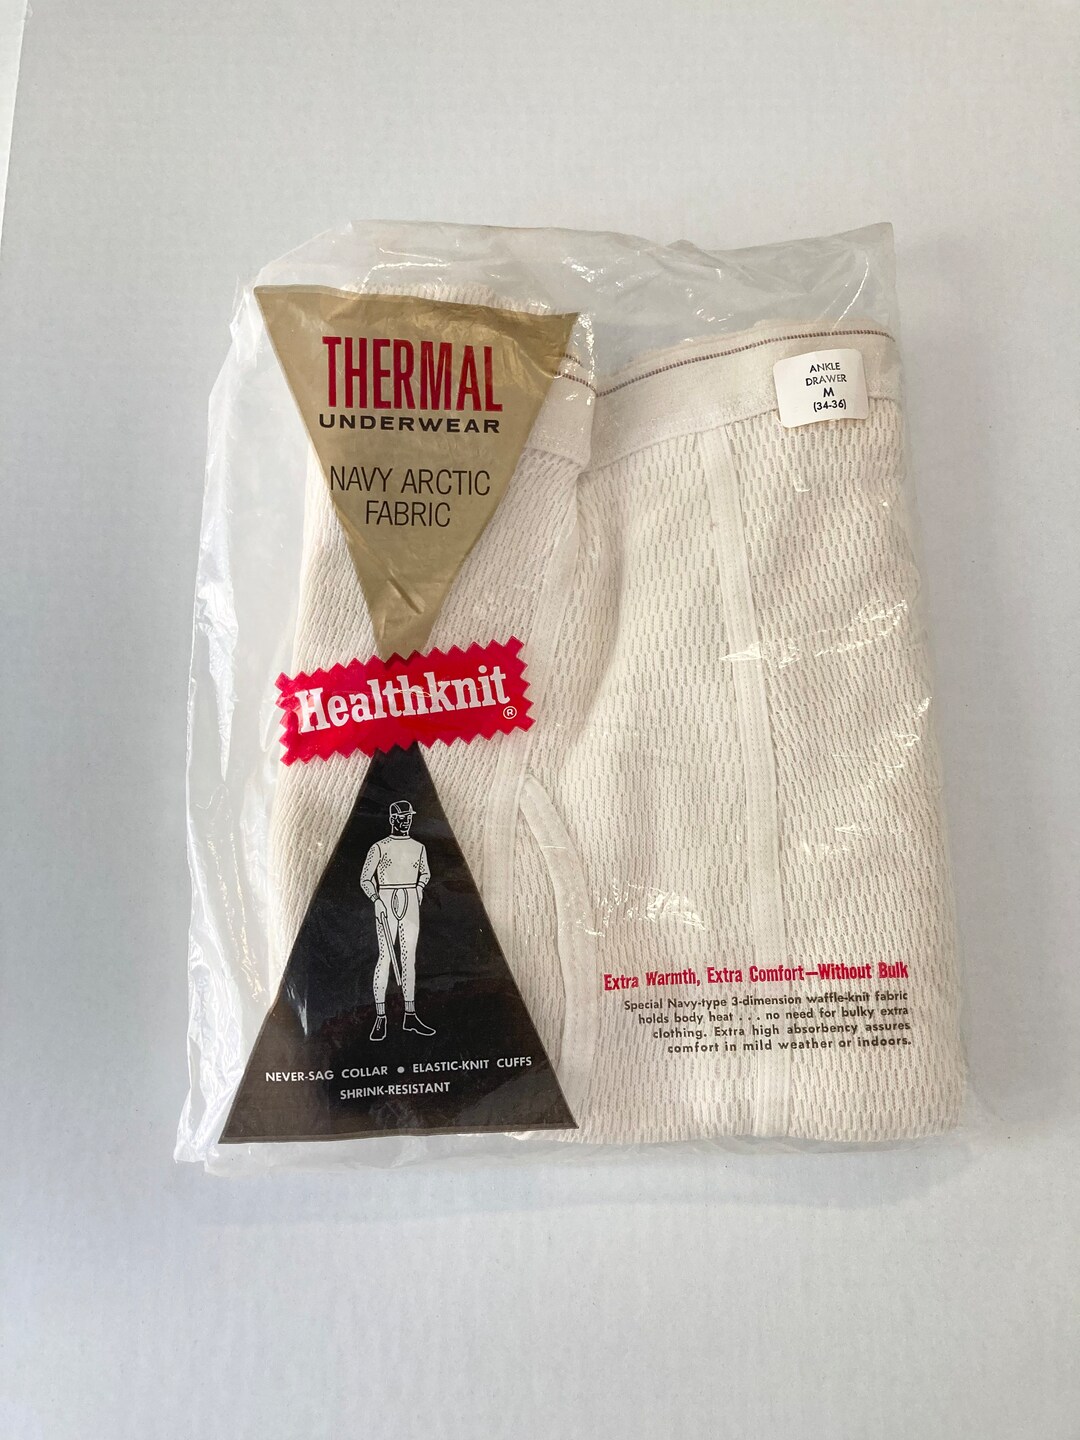 Vintage NOS Healthknit Thermal Underwear M 34-36 - Etsy